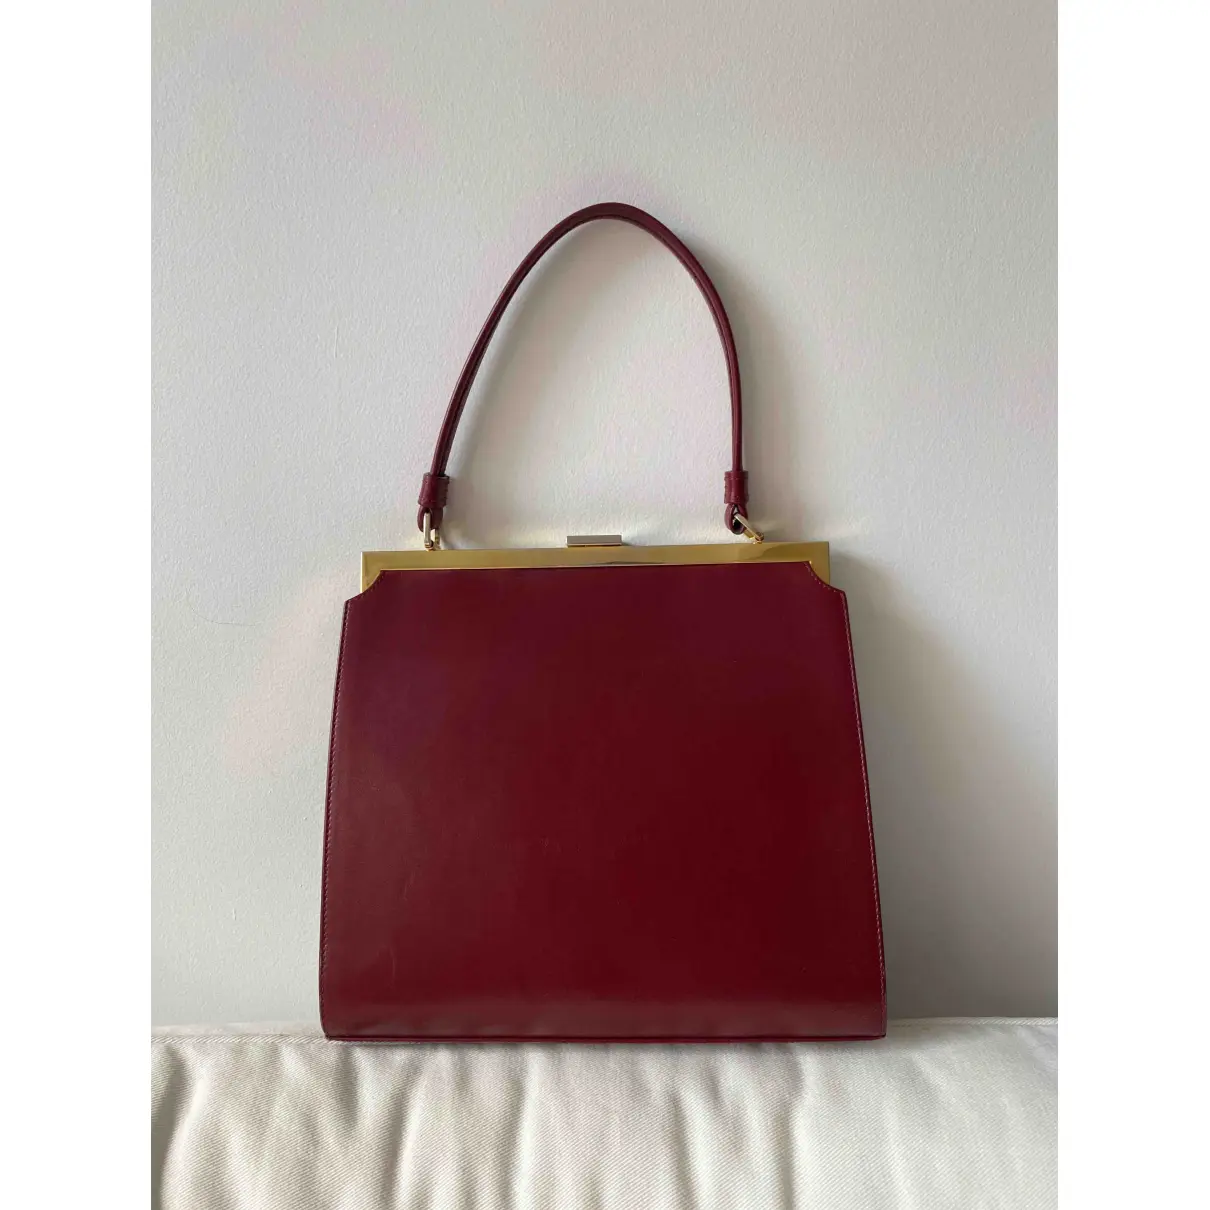 Buy Mansur Gavriel Leather handbag online